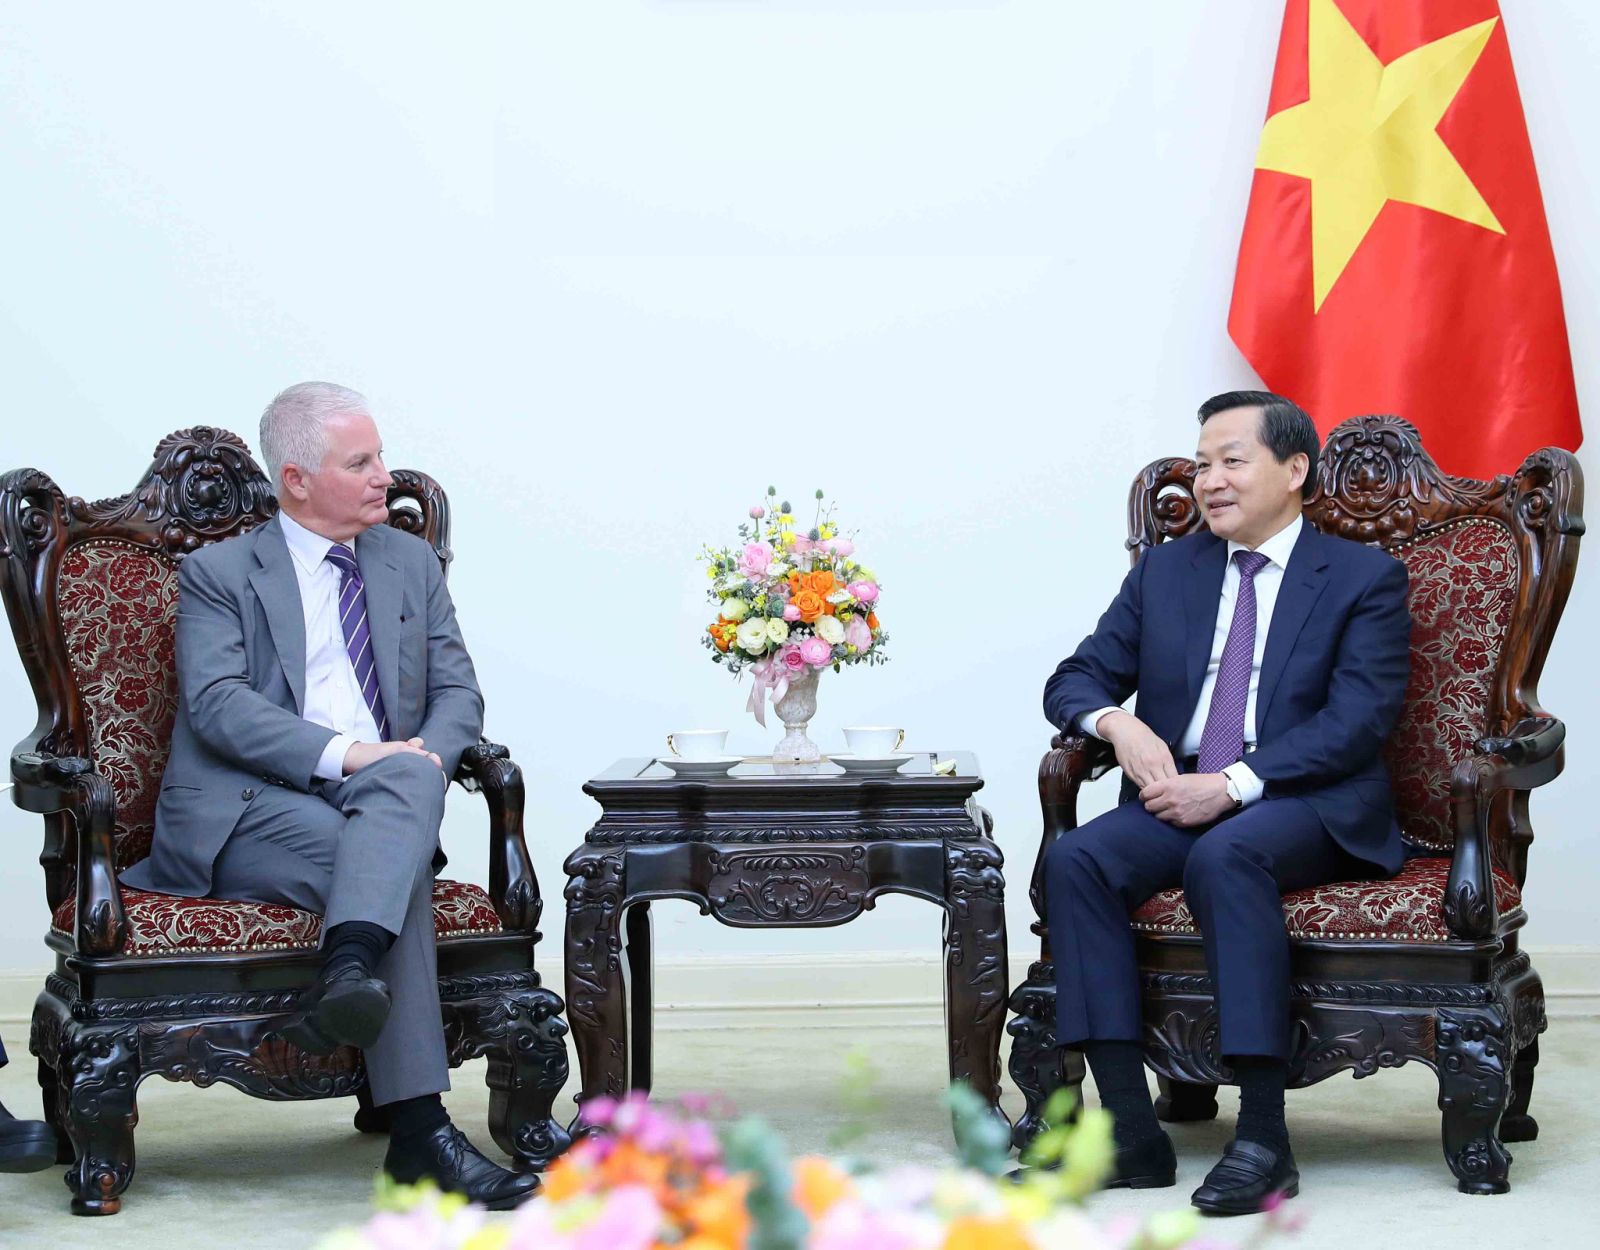 Phó Thủ tướng Lê Minh Khái: Warburg Pincus đã khẳng định vị thế là một trong những quỹ đầu tư hàng đầu tại Việt Nam với tổng số vốn hơn 2 tỷ USD. Ảnh VGP